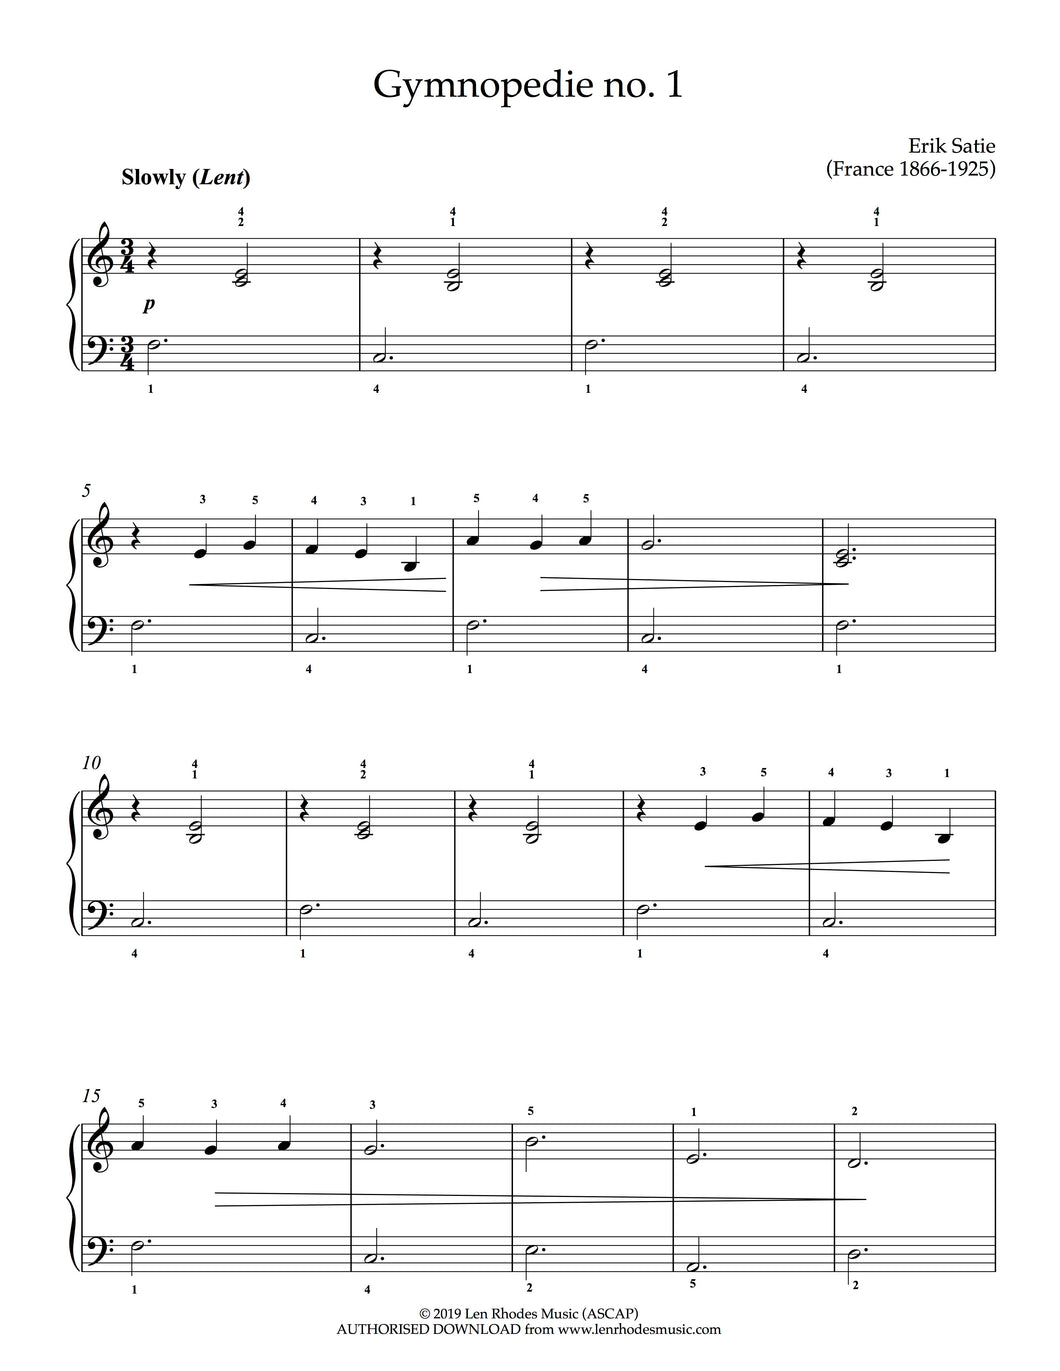 Gymnopedie, no 1, Erik Satie - very easy Piano